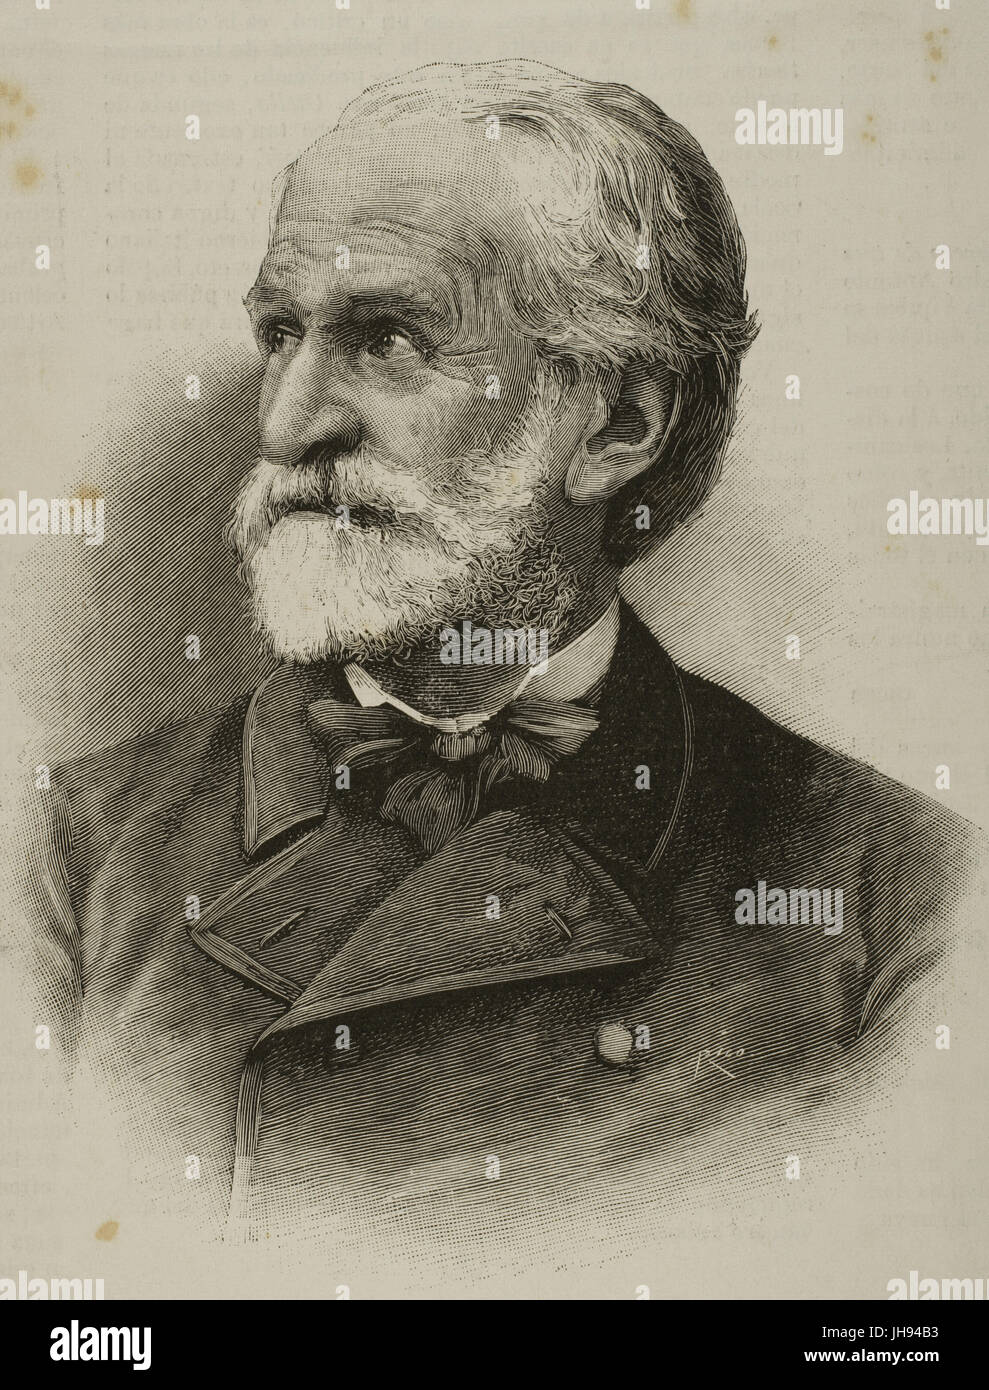 Giuseppe Verdi (1813-1901). Italienischer Komponist. Kupferstich von Rico in die spanische und American Illustration des 19. Jahrhunderts. Stockfoto